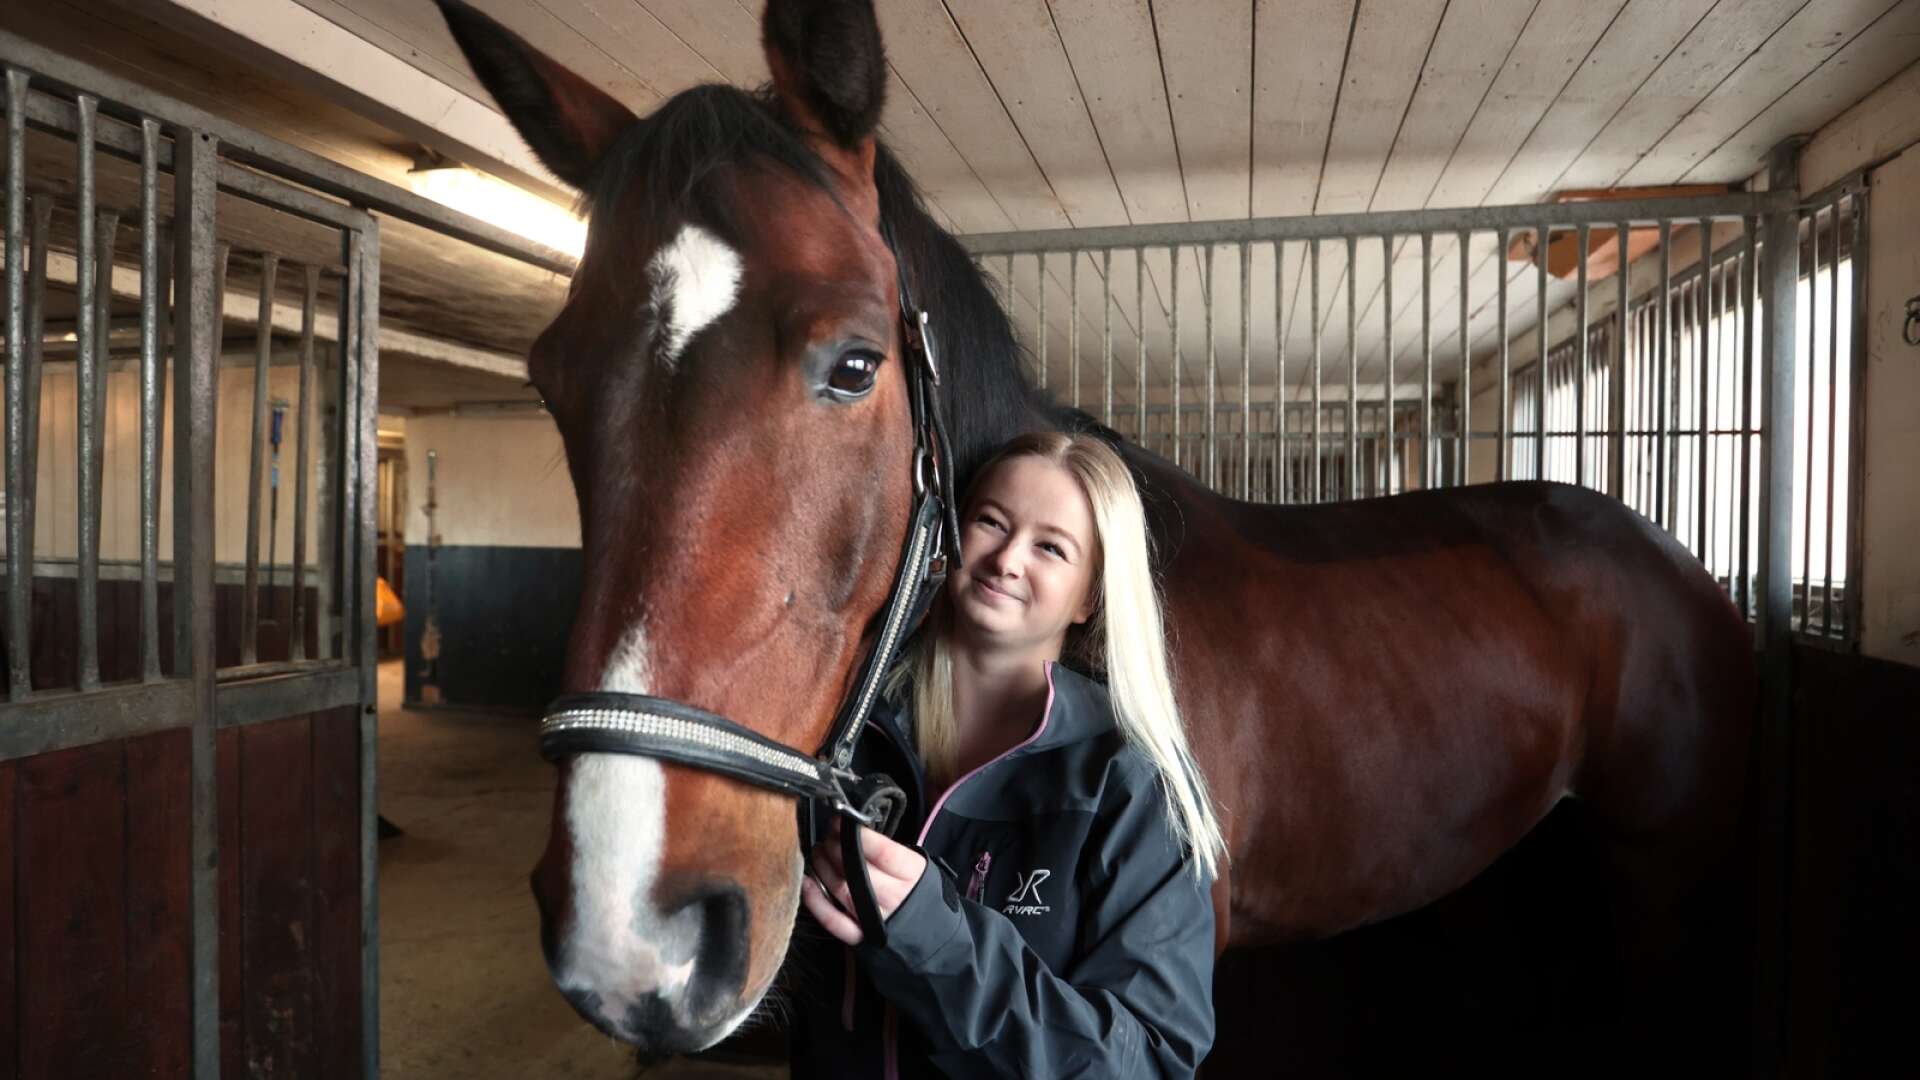 ”En bra dag åker jag till stallet och pussar lite på hästarna och sen åker jag hem”, säger Sara Björklund som inte längre kan rida efter att hon blev sjuk.